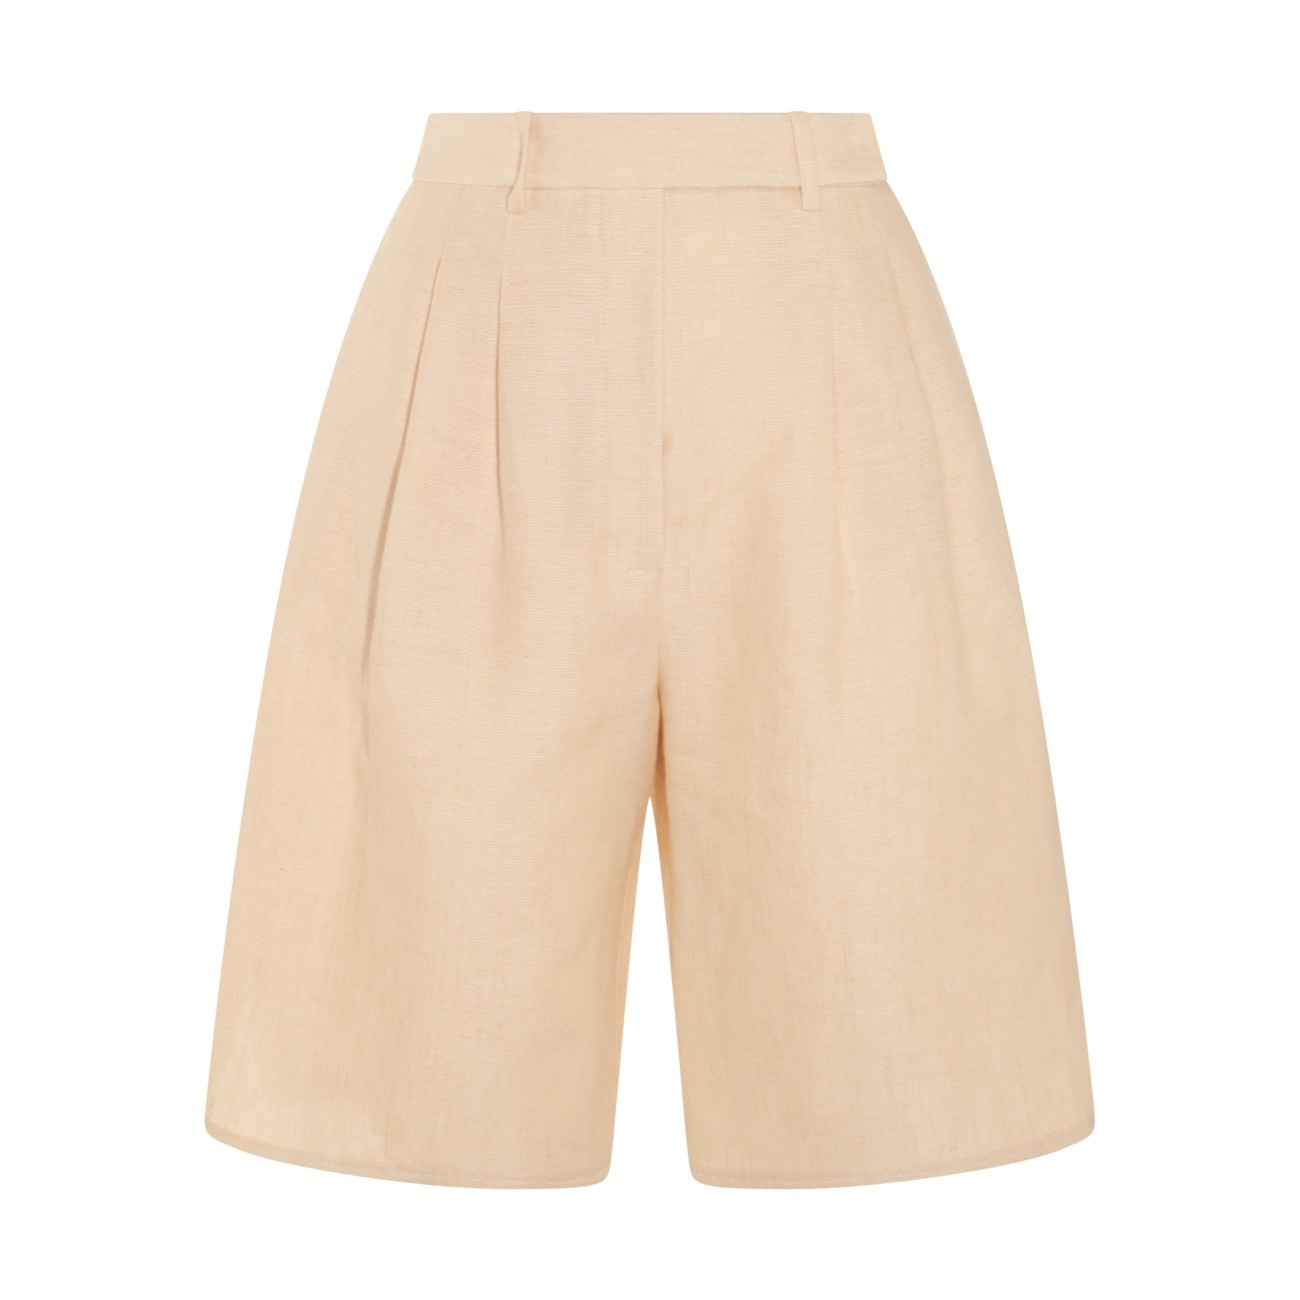 beige linen shorts - 1